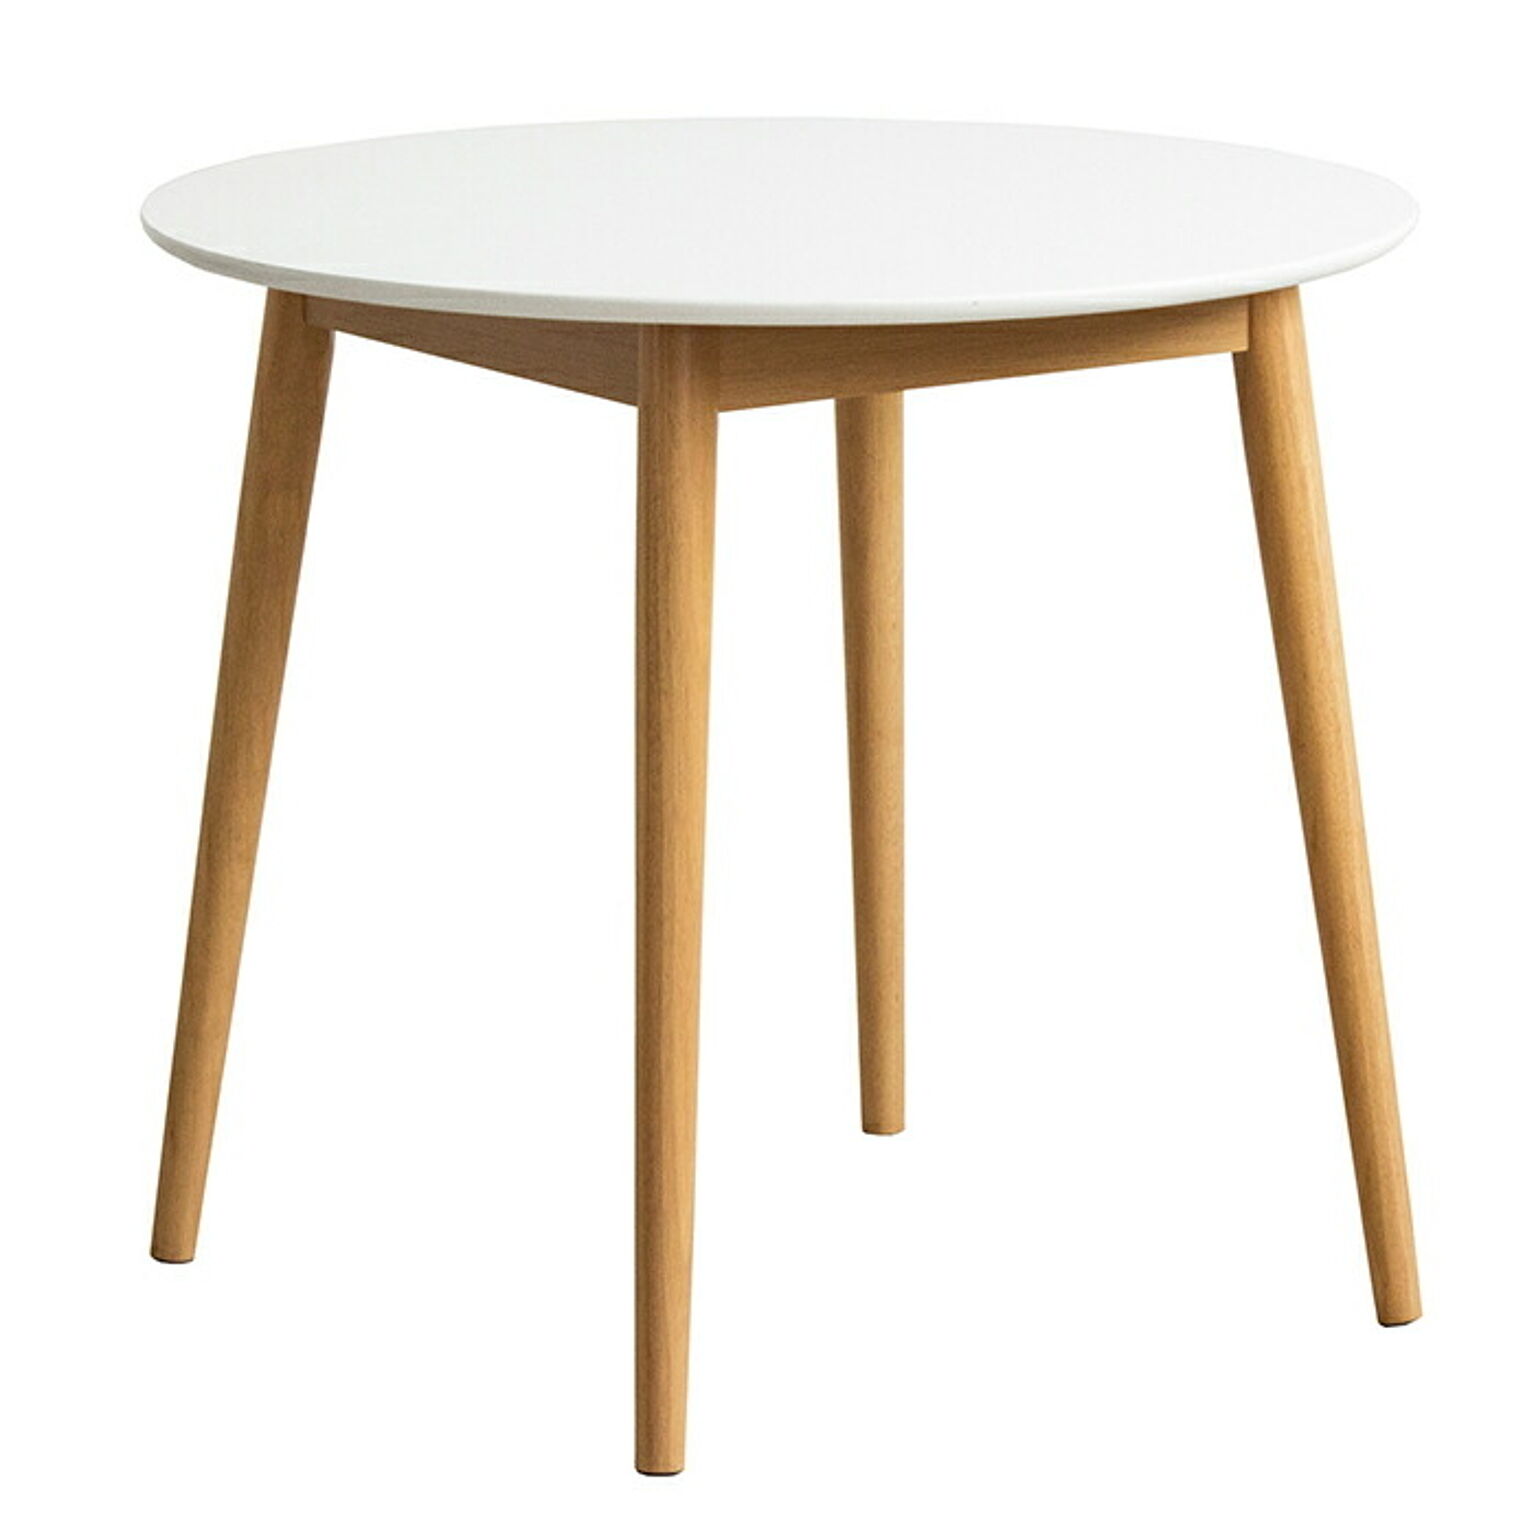 テーブル 組立式 円形ダイニングテーブル Marron マロン IW-410 幅80x奥行80x高さ71cm 岩附